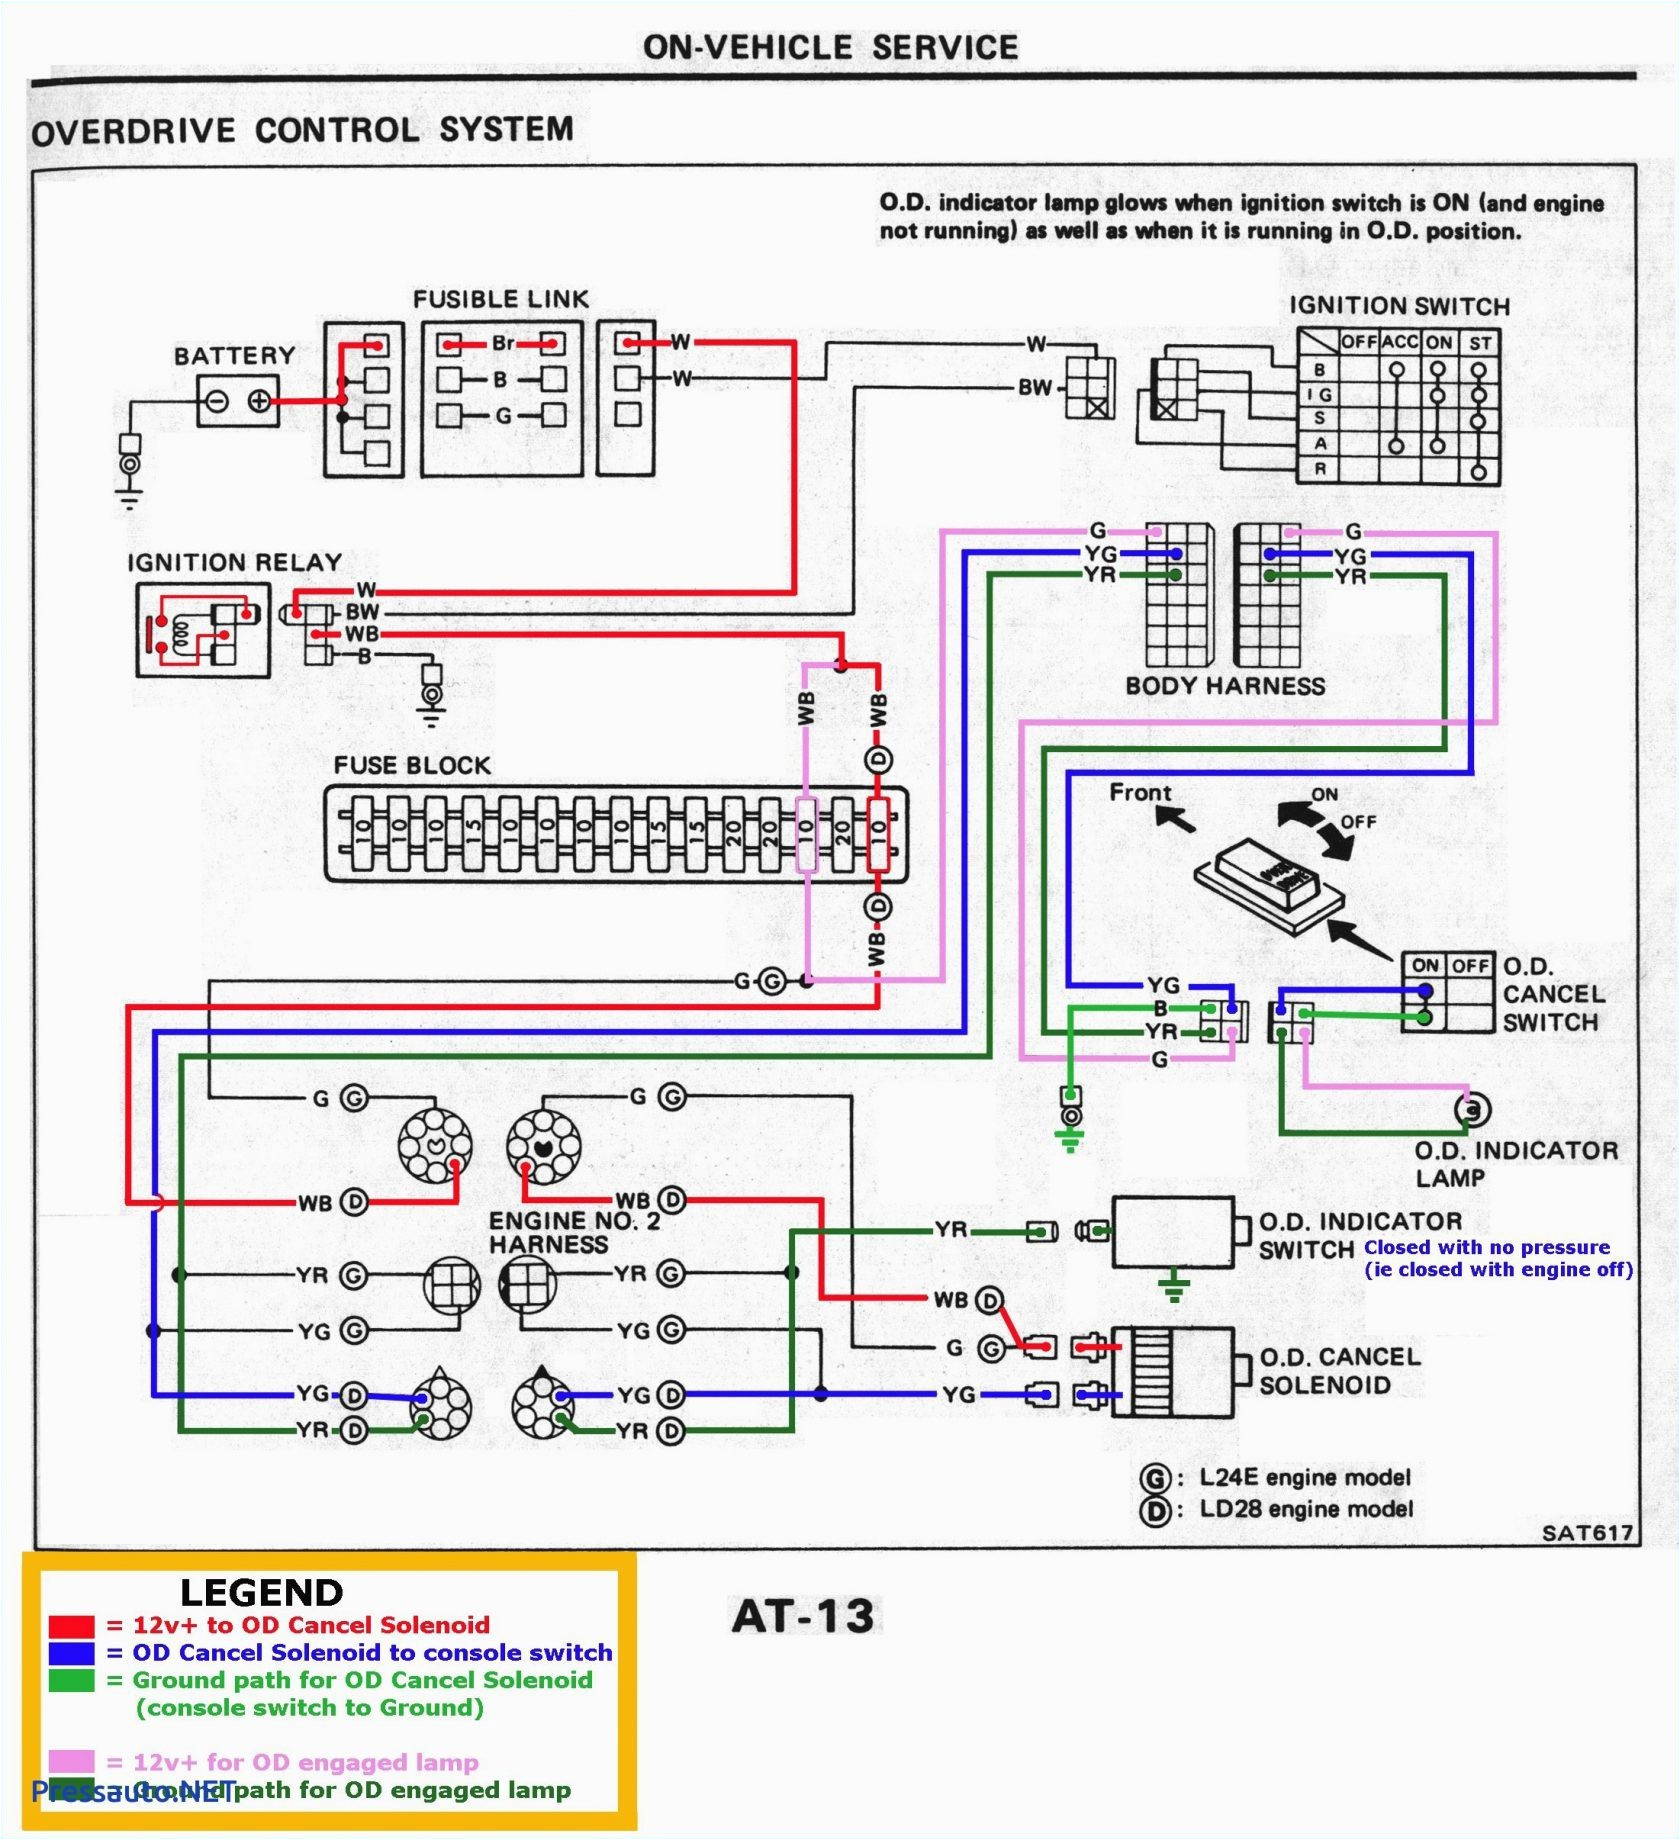 electric trailer kes wiring diagram wiring diagram view trailer wiring diagrams with electric kes